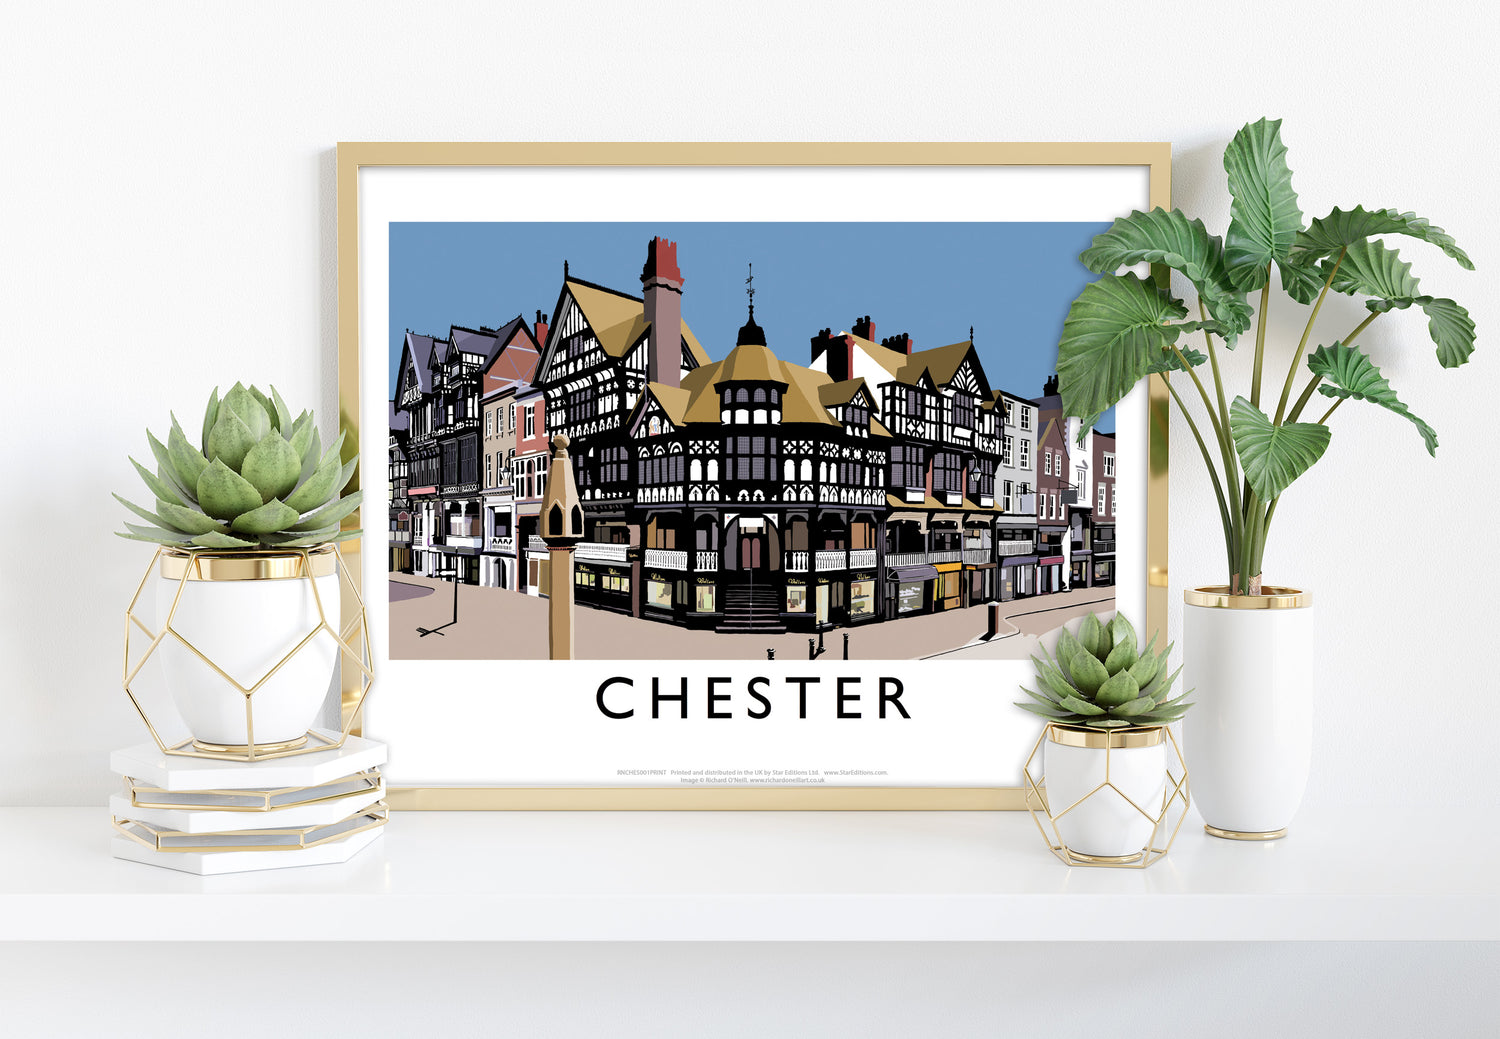 Chester - Art Print